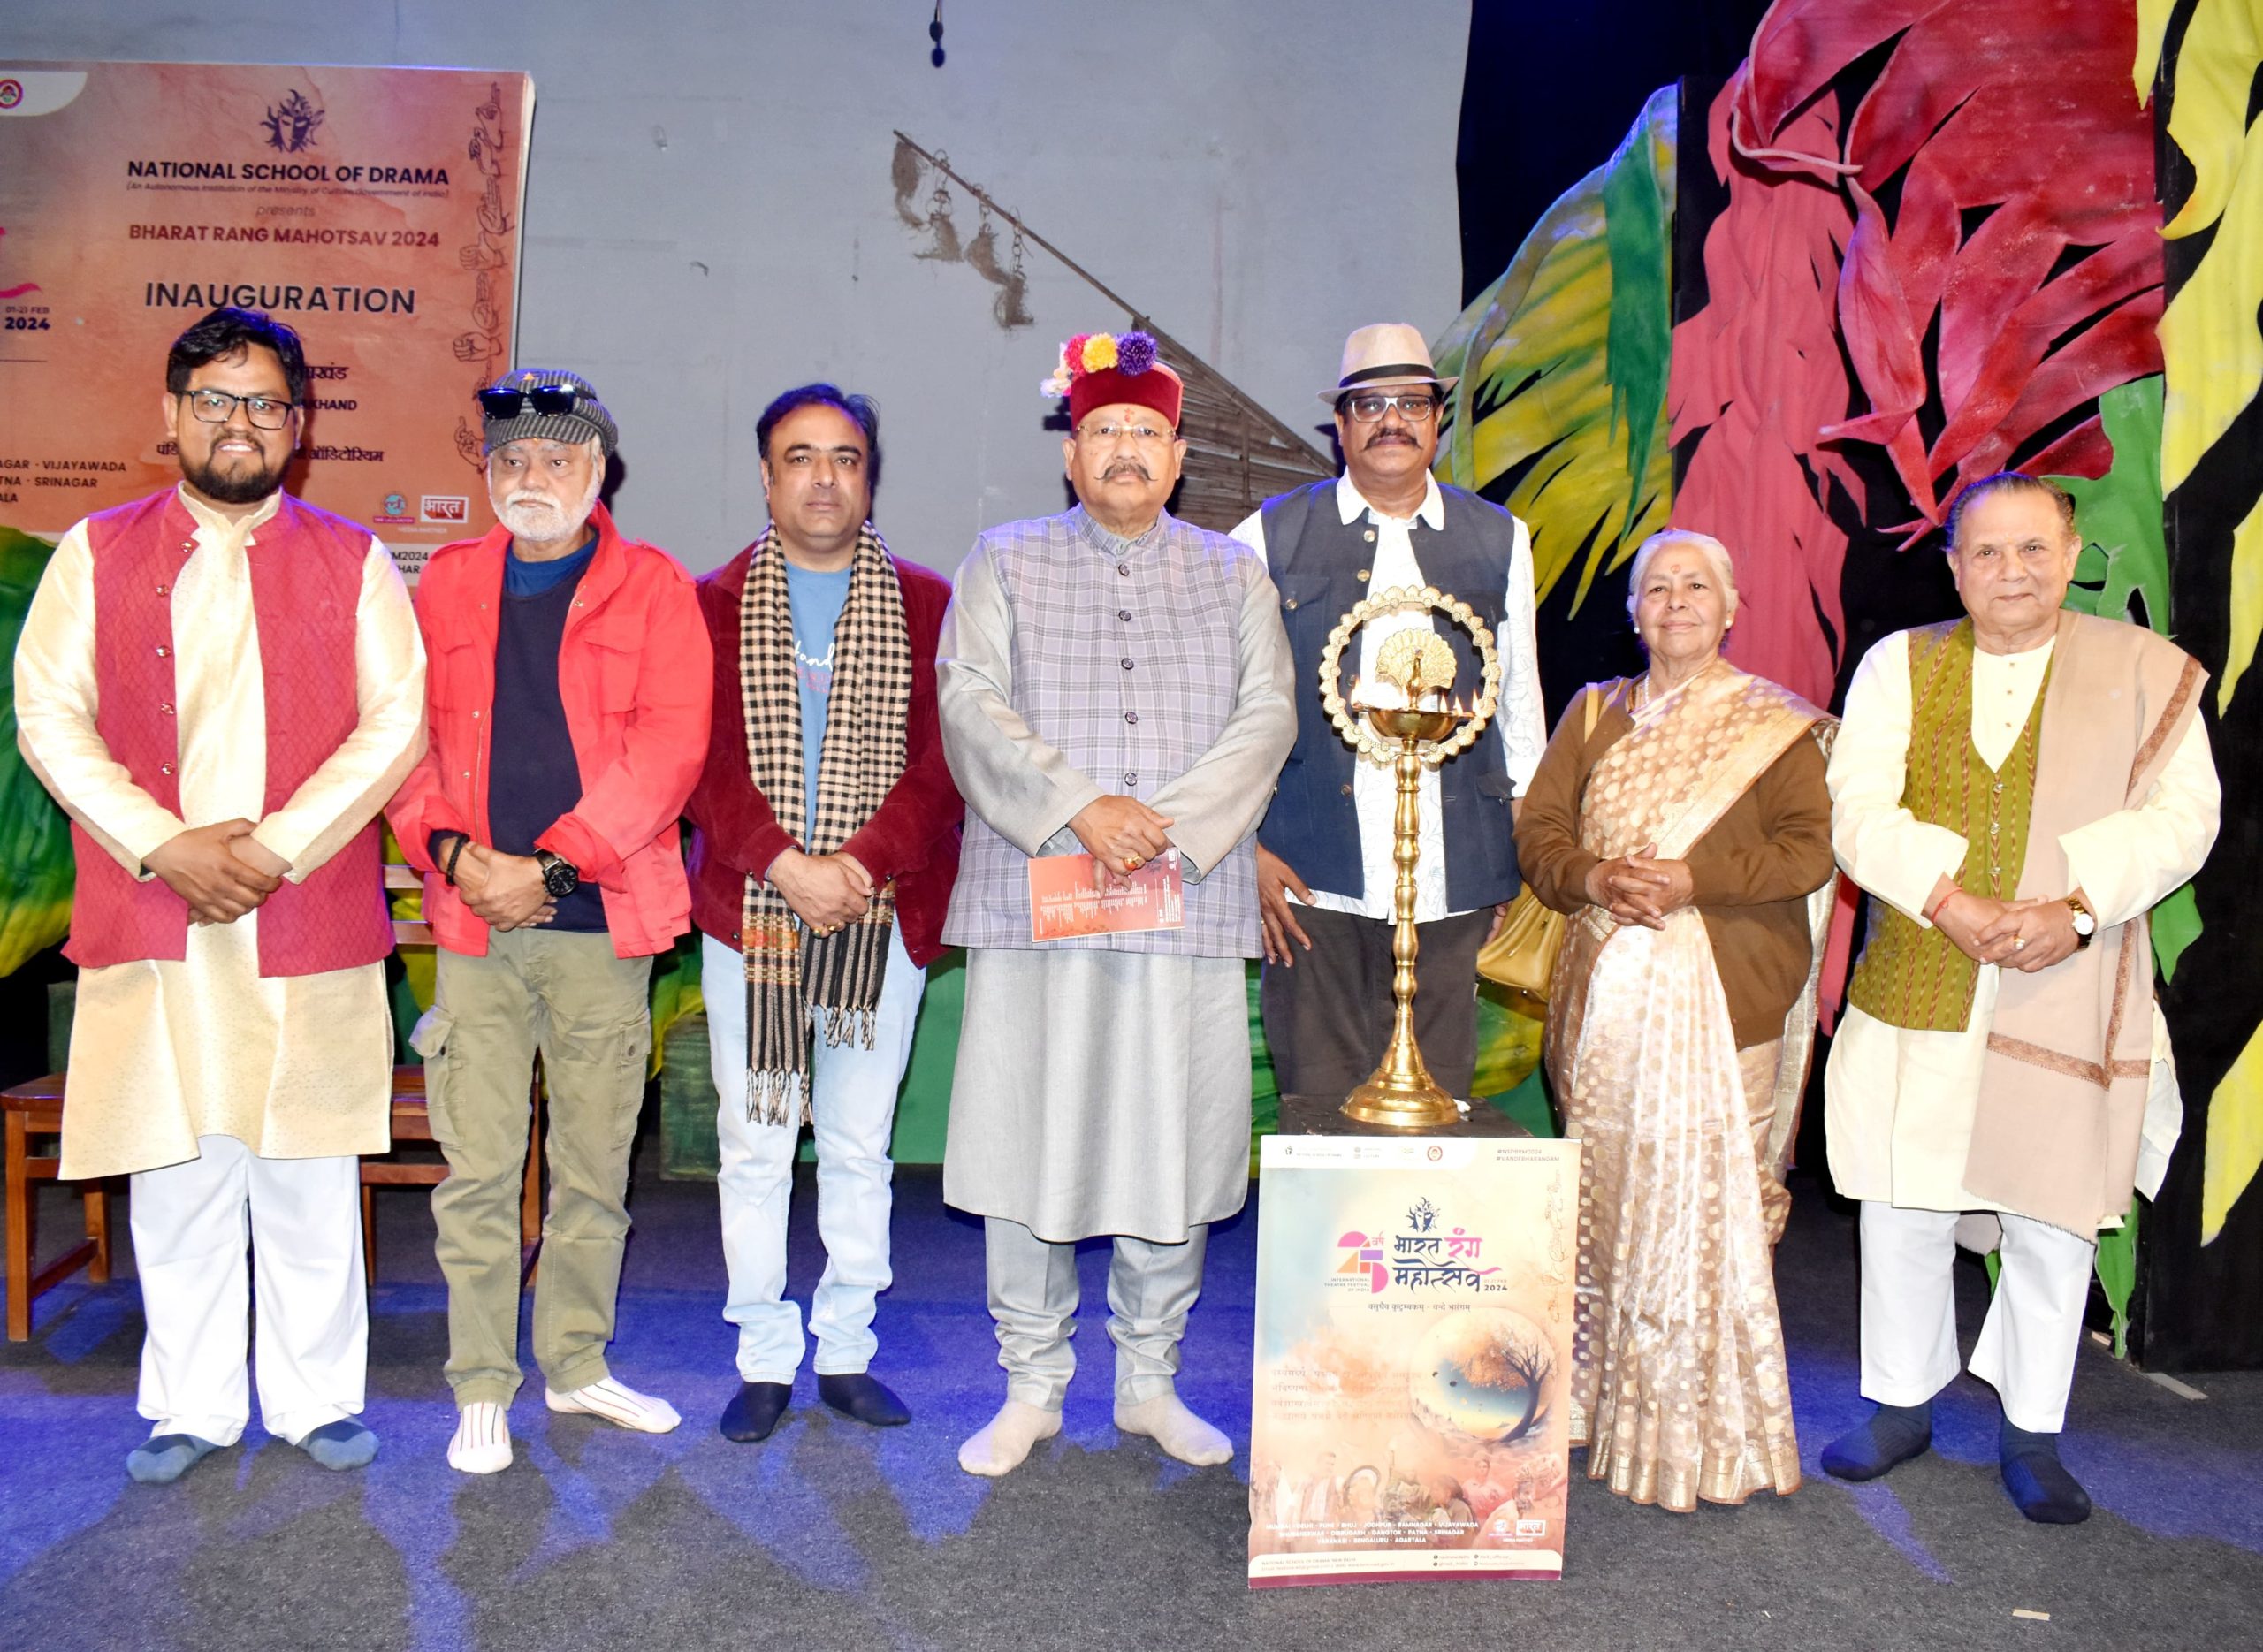 satpal maharaj scaled भारत रंग महोत्सव वैश्विक एकता को बढ़ावा देने का सफल प्रयासः महाराज